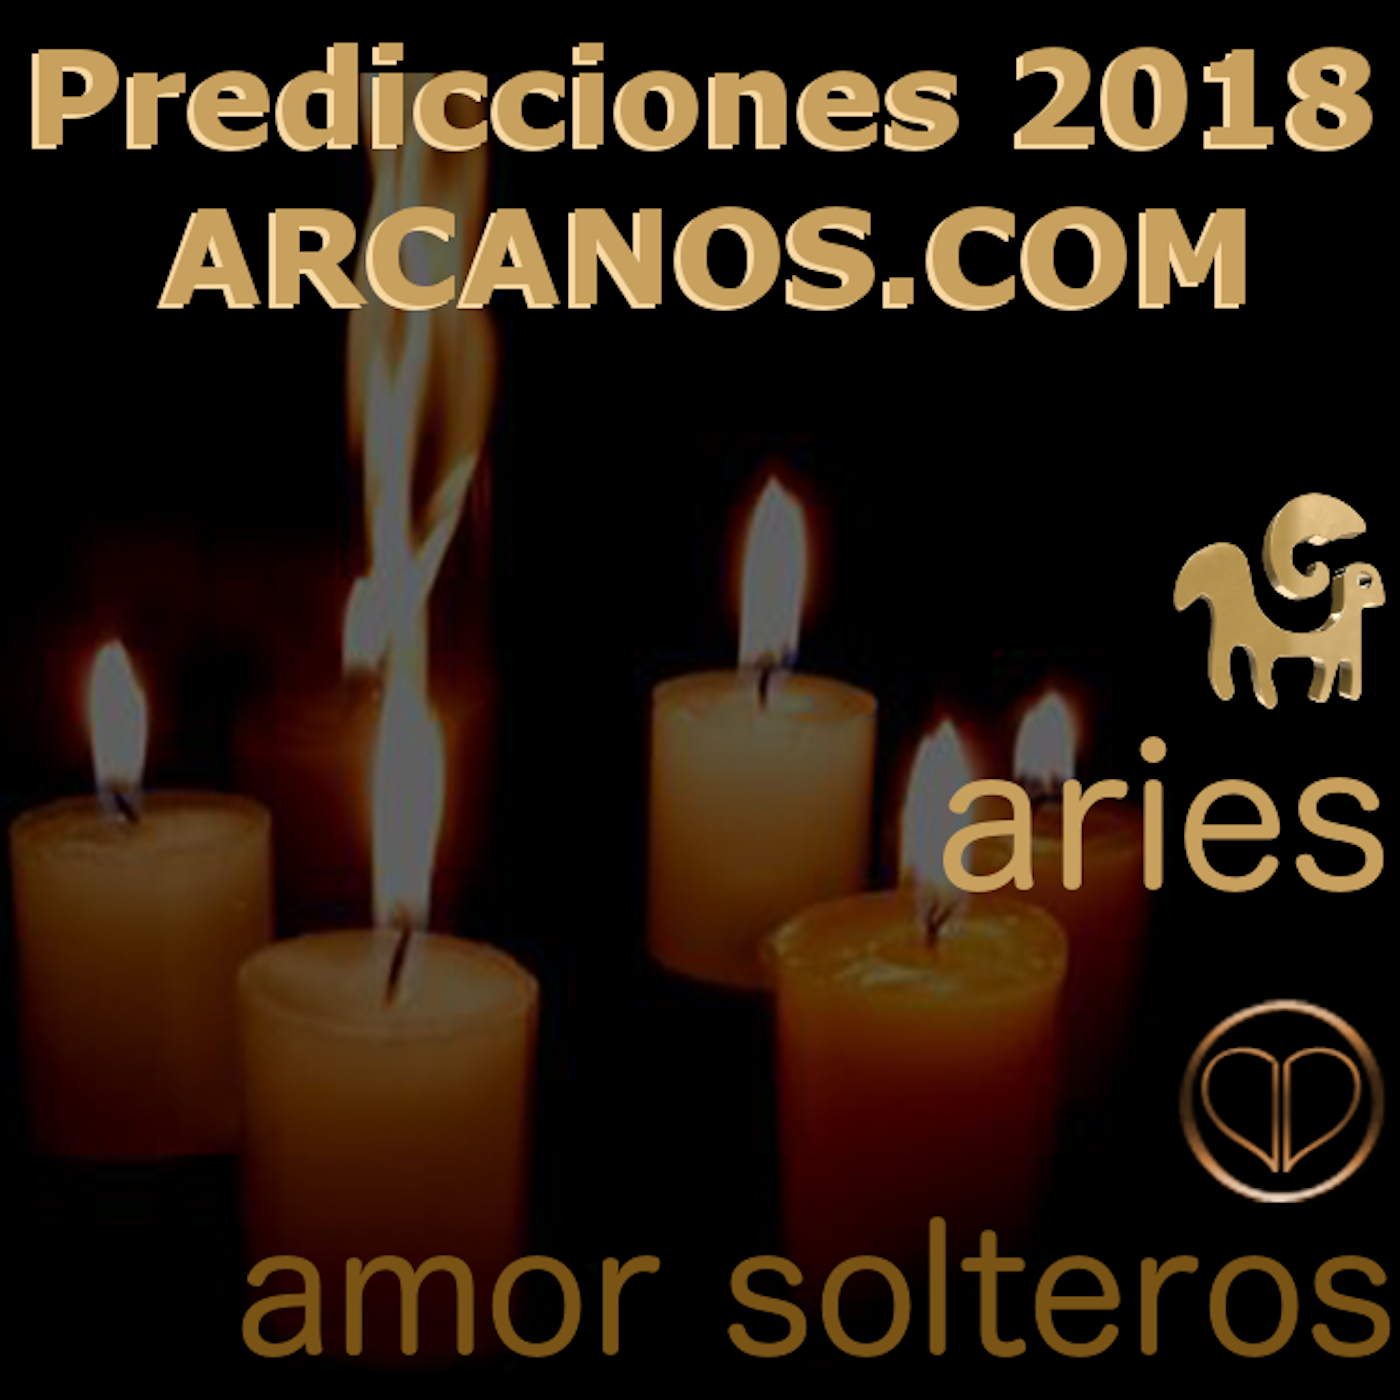 Predicciones 2018 Aries Amor Solteros-ARCANOS.COM